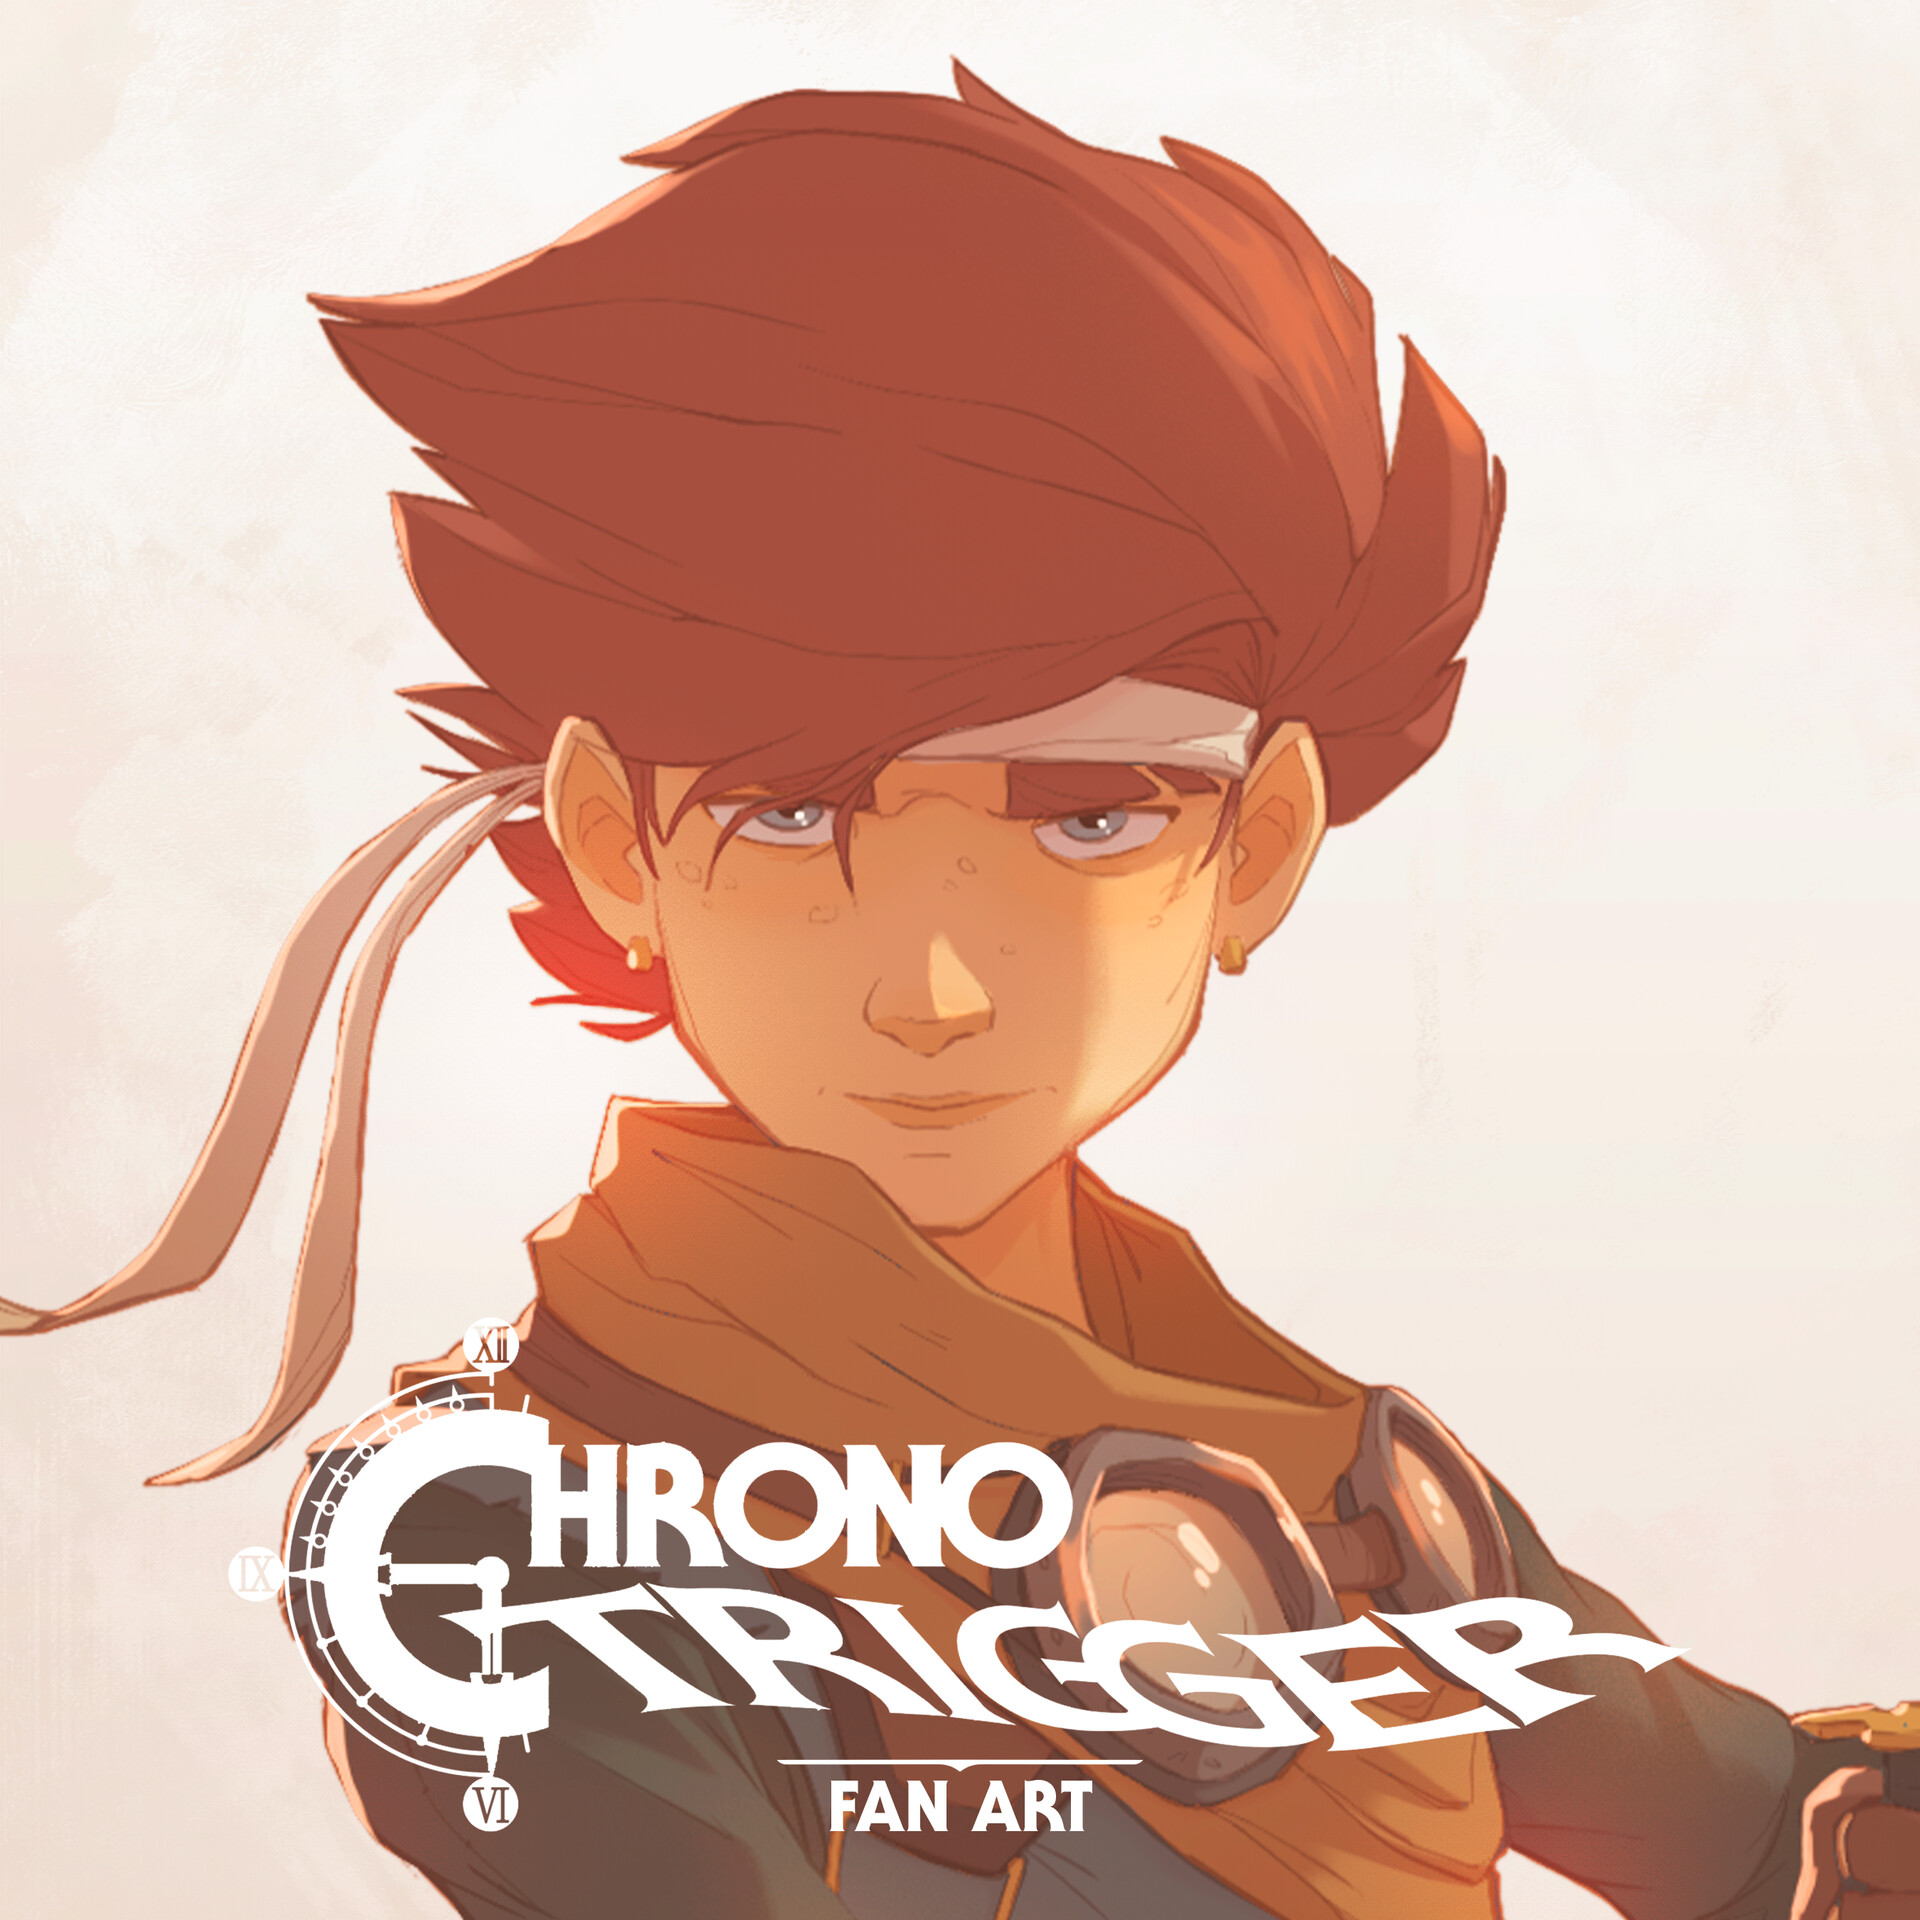 ArtStation - Chrono Cross Redesign - Full Cast